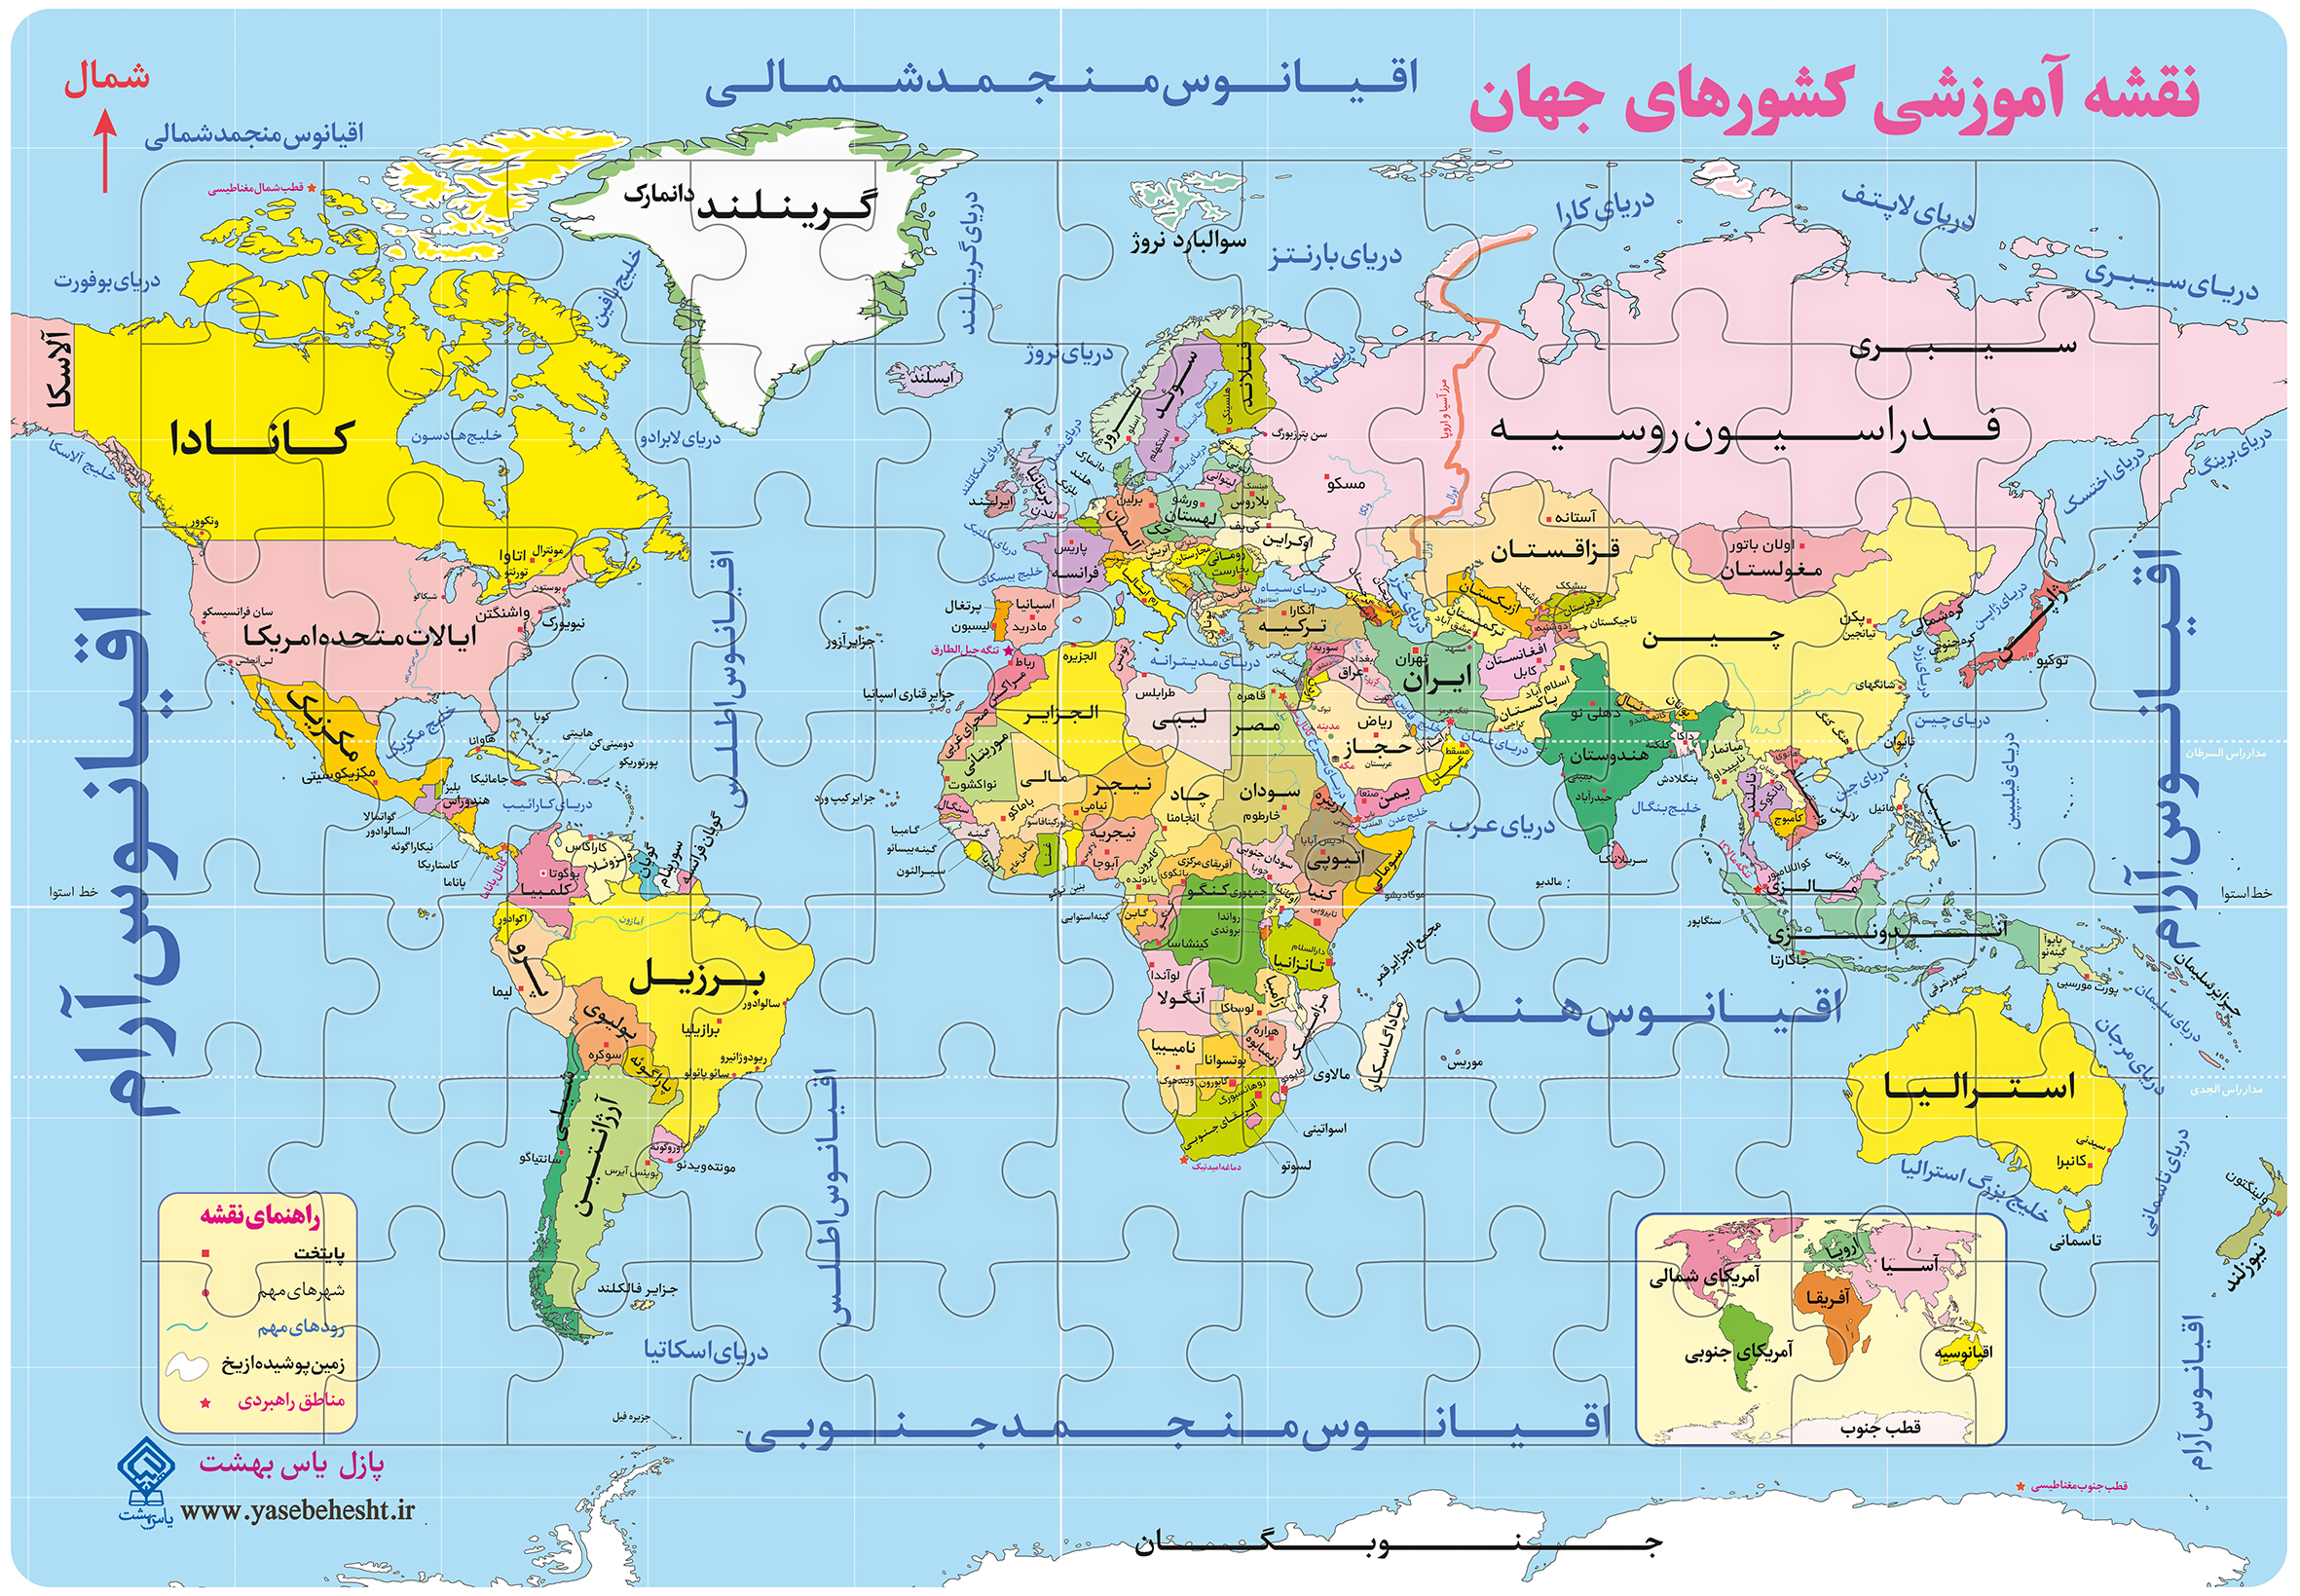 پازل 77 تکه یاس بهشت نقشه آموزشی کشورهای جهان